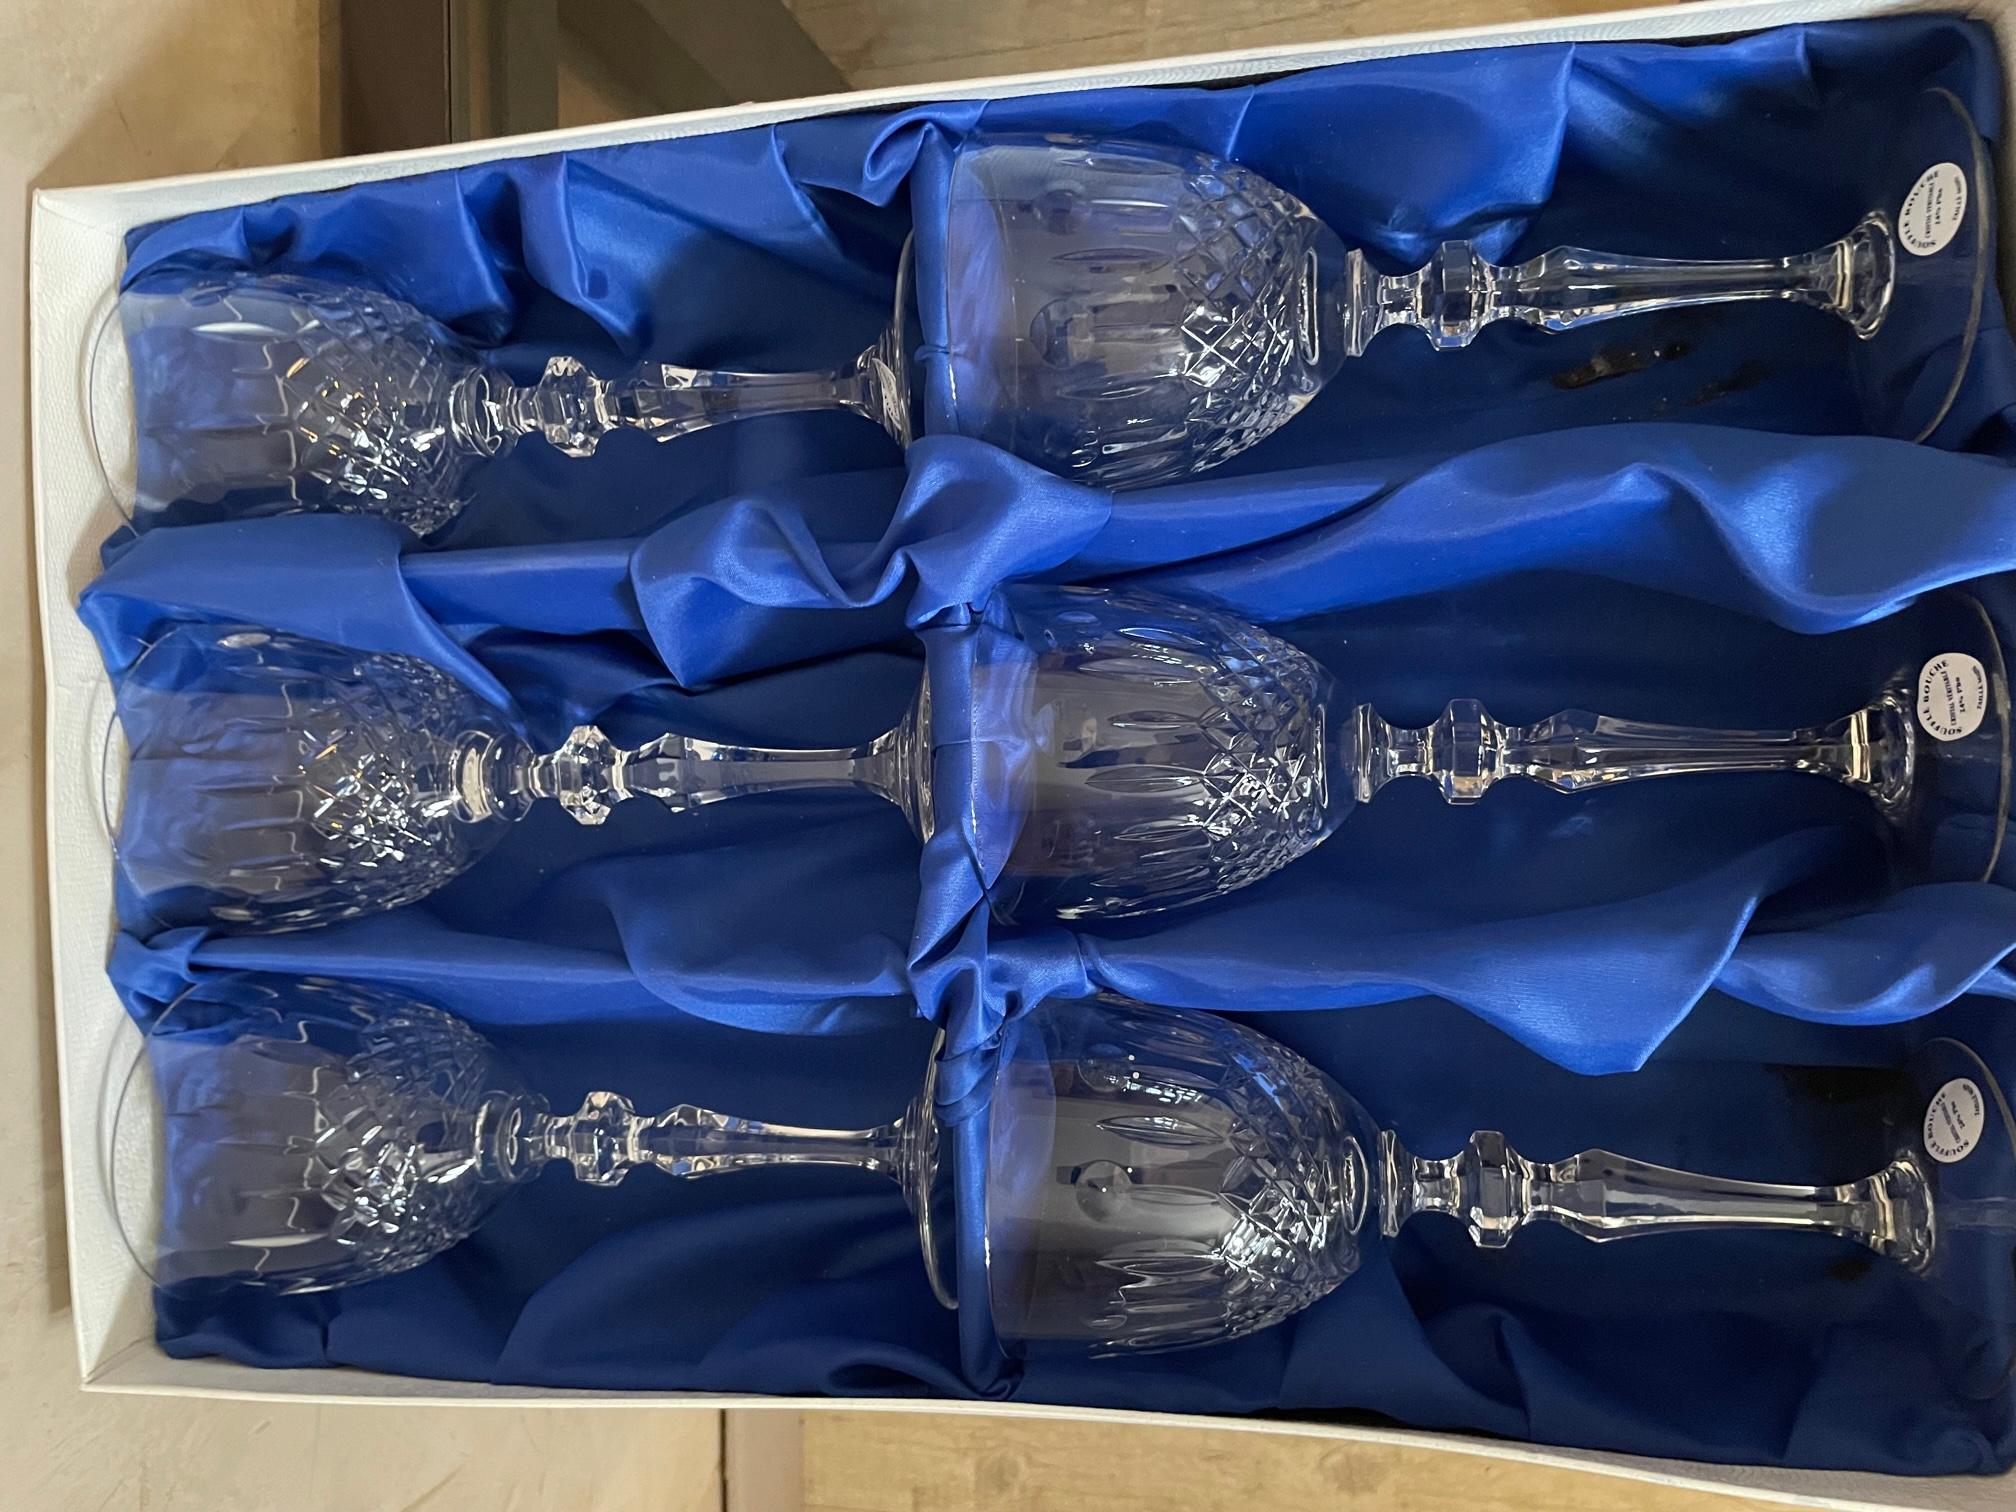 Très bel ensemble de verres et carafe en cristal Lorrain datant des années 1950, composé de :
- 6 verres à vin
- 6 verres à eau
- 6 flûtes
- 1 carafe
Boîte d'origine pour chaque set de verres ainsi que pour la carafe.
Cristal soufflé à la bouche et